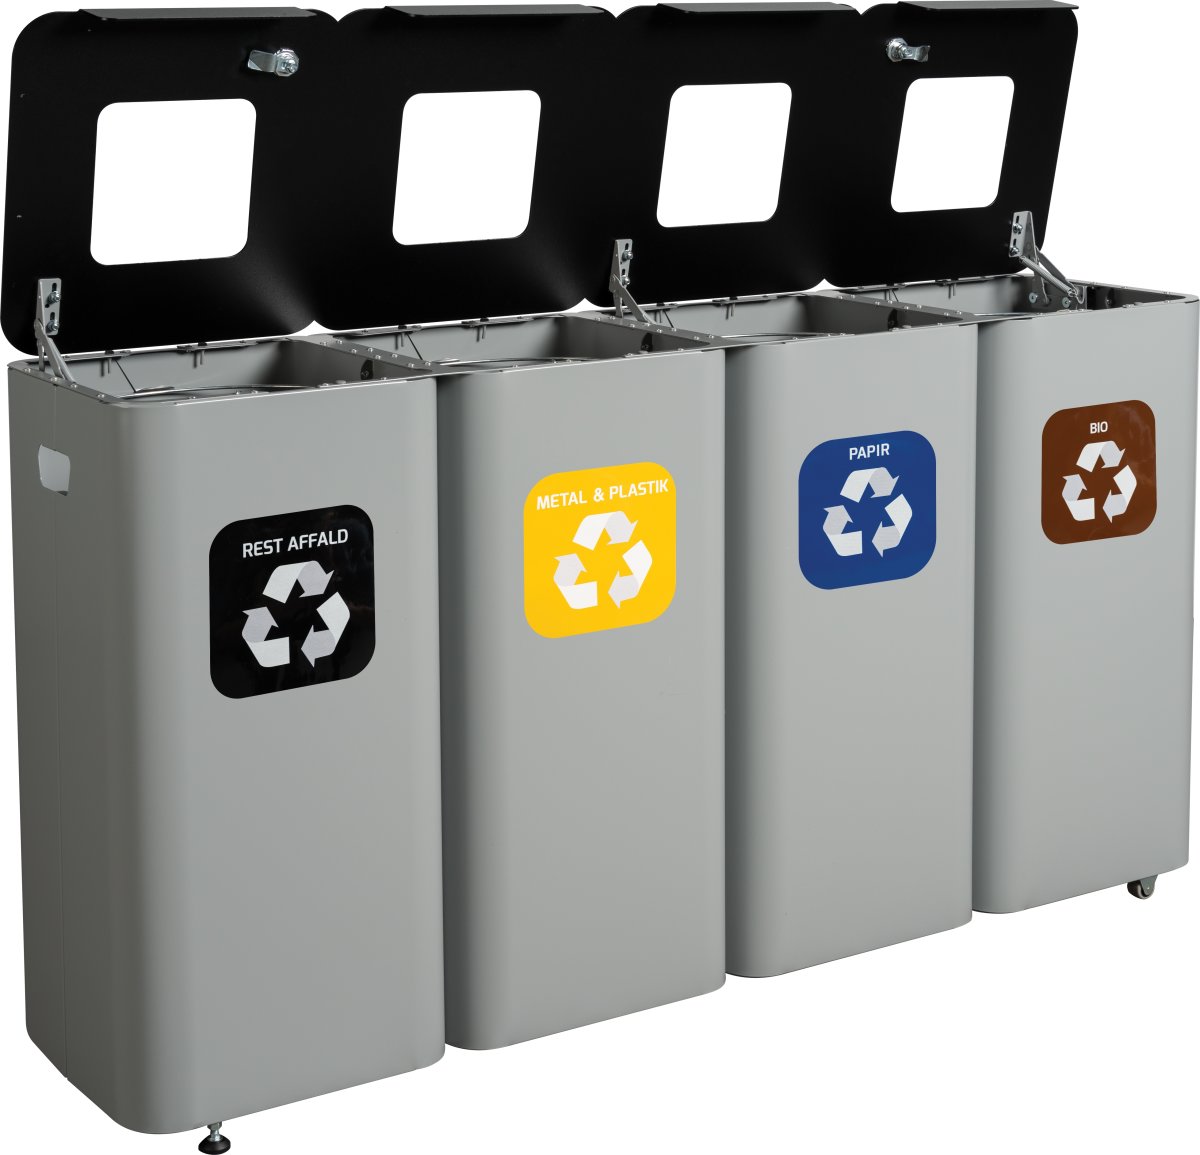 Modulspande til affaldssortering | 4 x 70 L